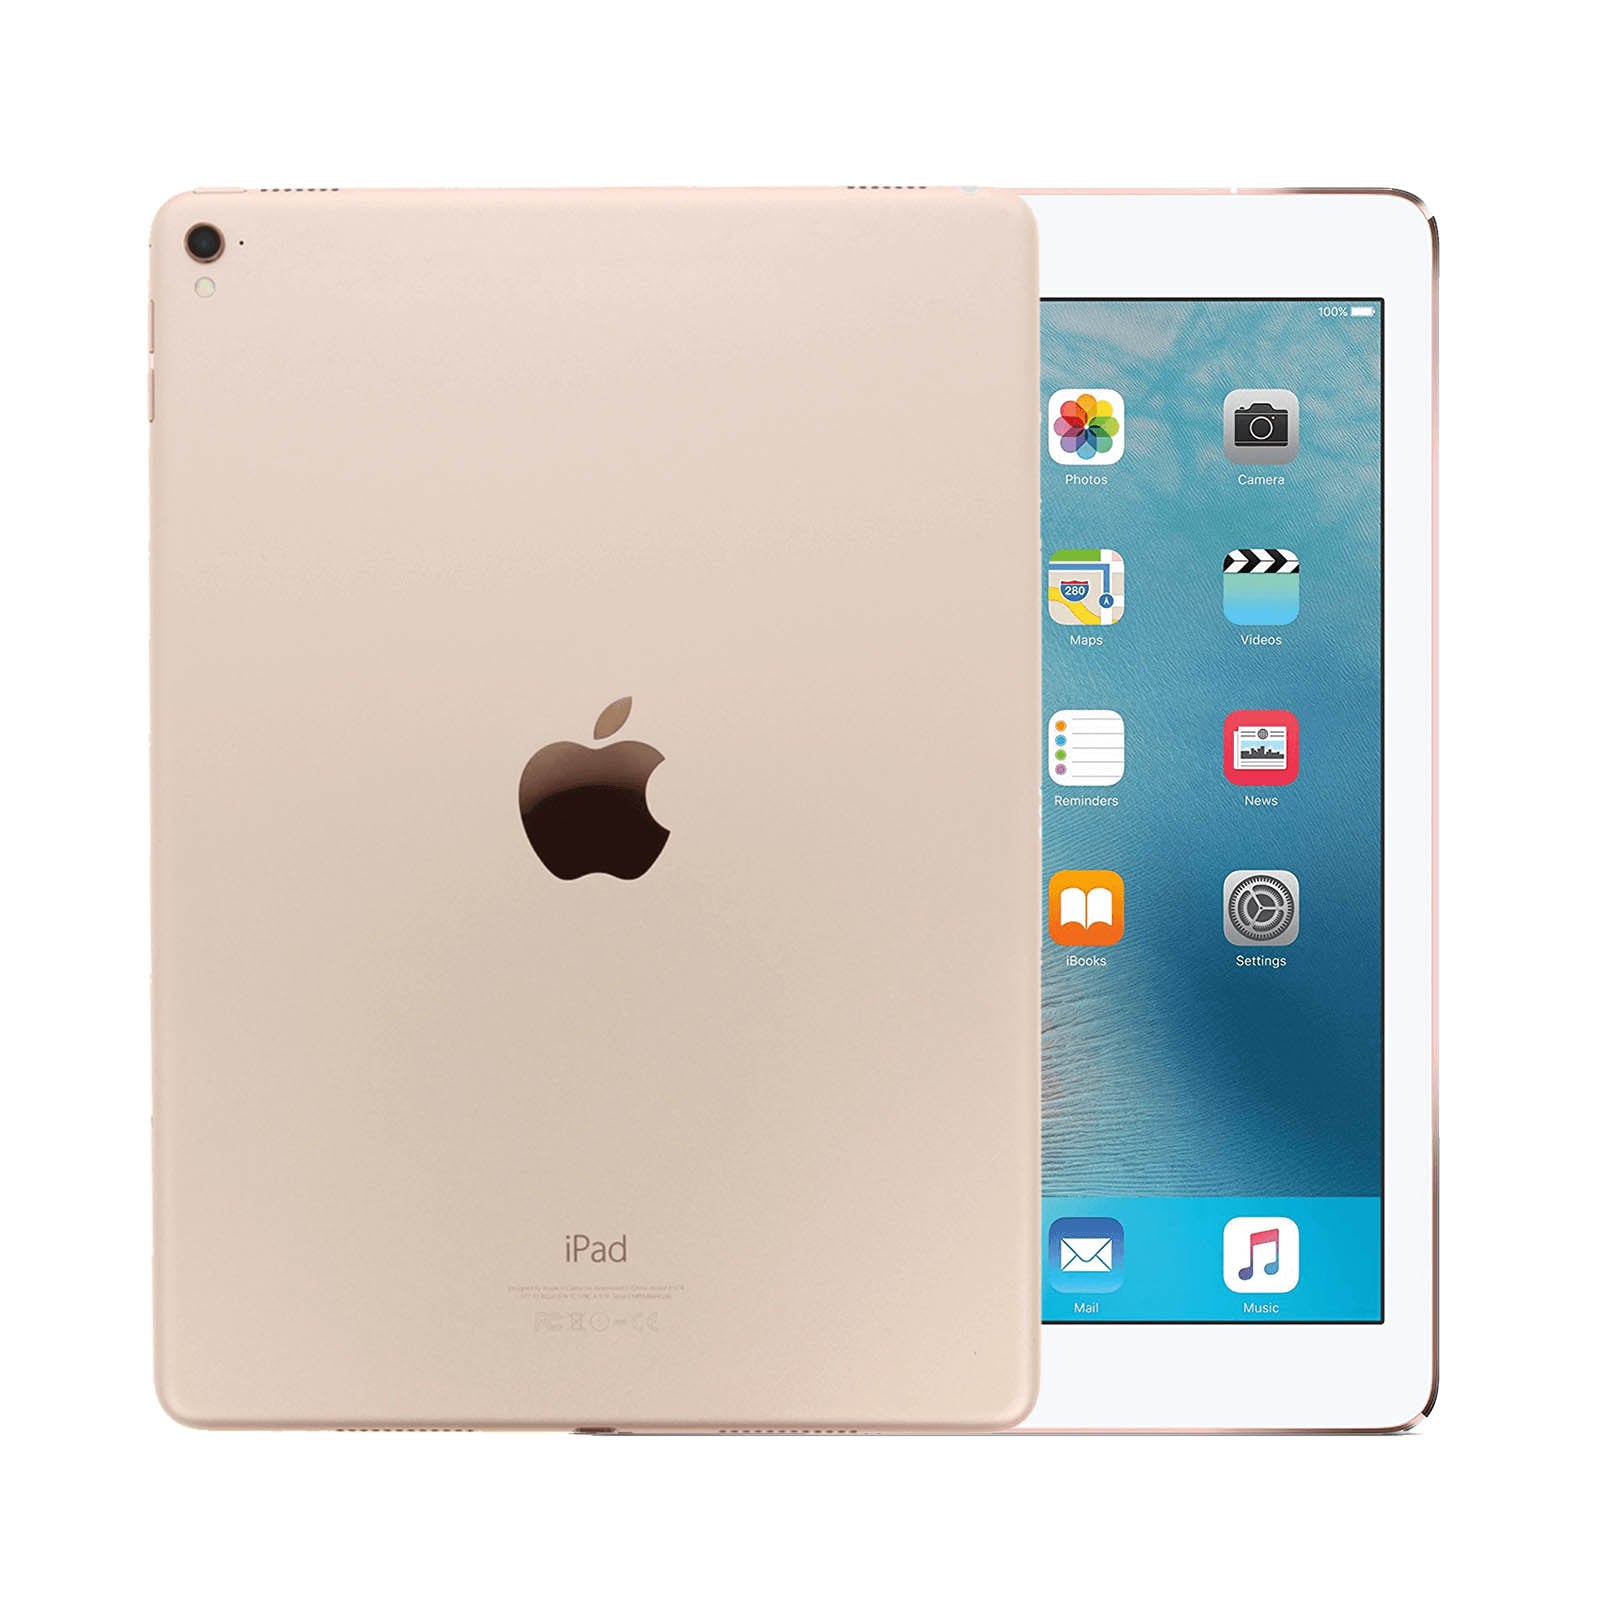 iPad Pro 9.7 Inch 128GB WiFi Gold Gut WiFi